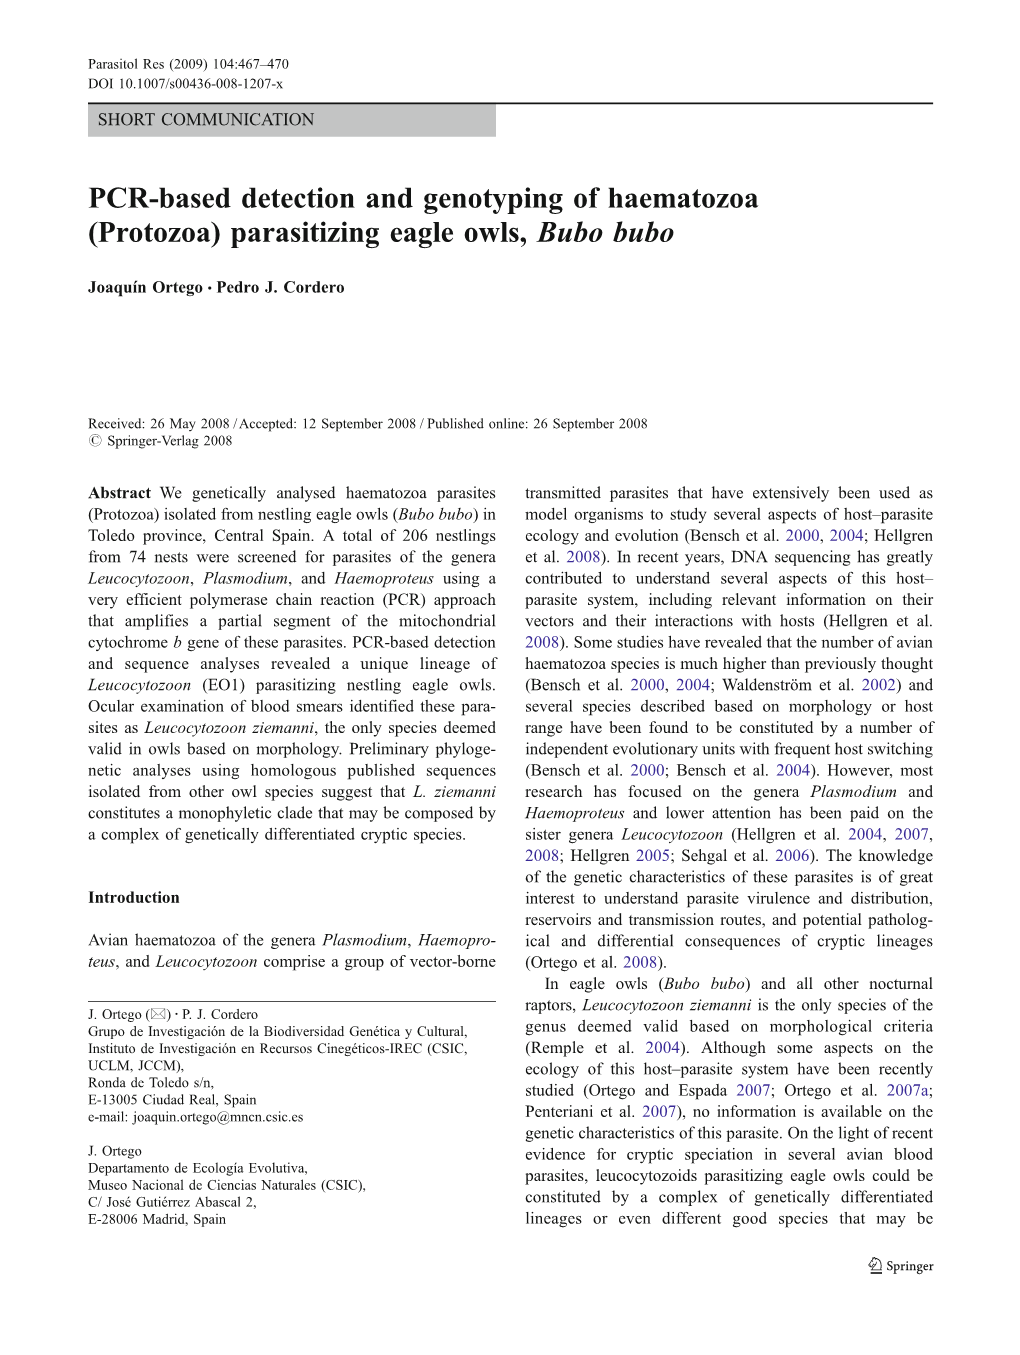 PCR-Based Detection and Genotyping of Haematozoa (Protozoa) Parasitizing Eagle Owls, Bubo Bubo